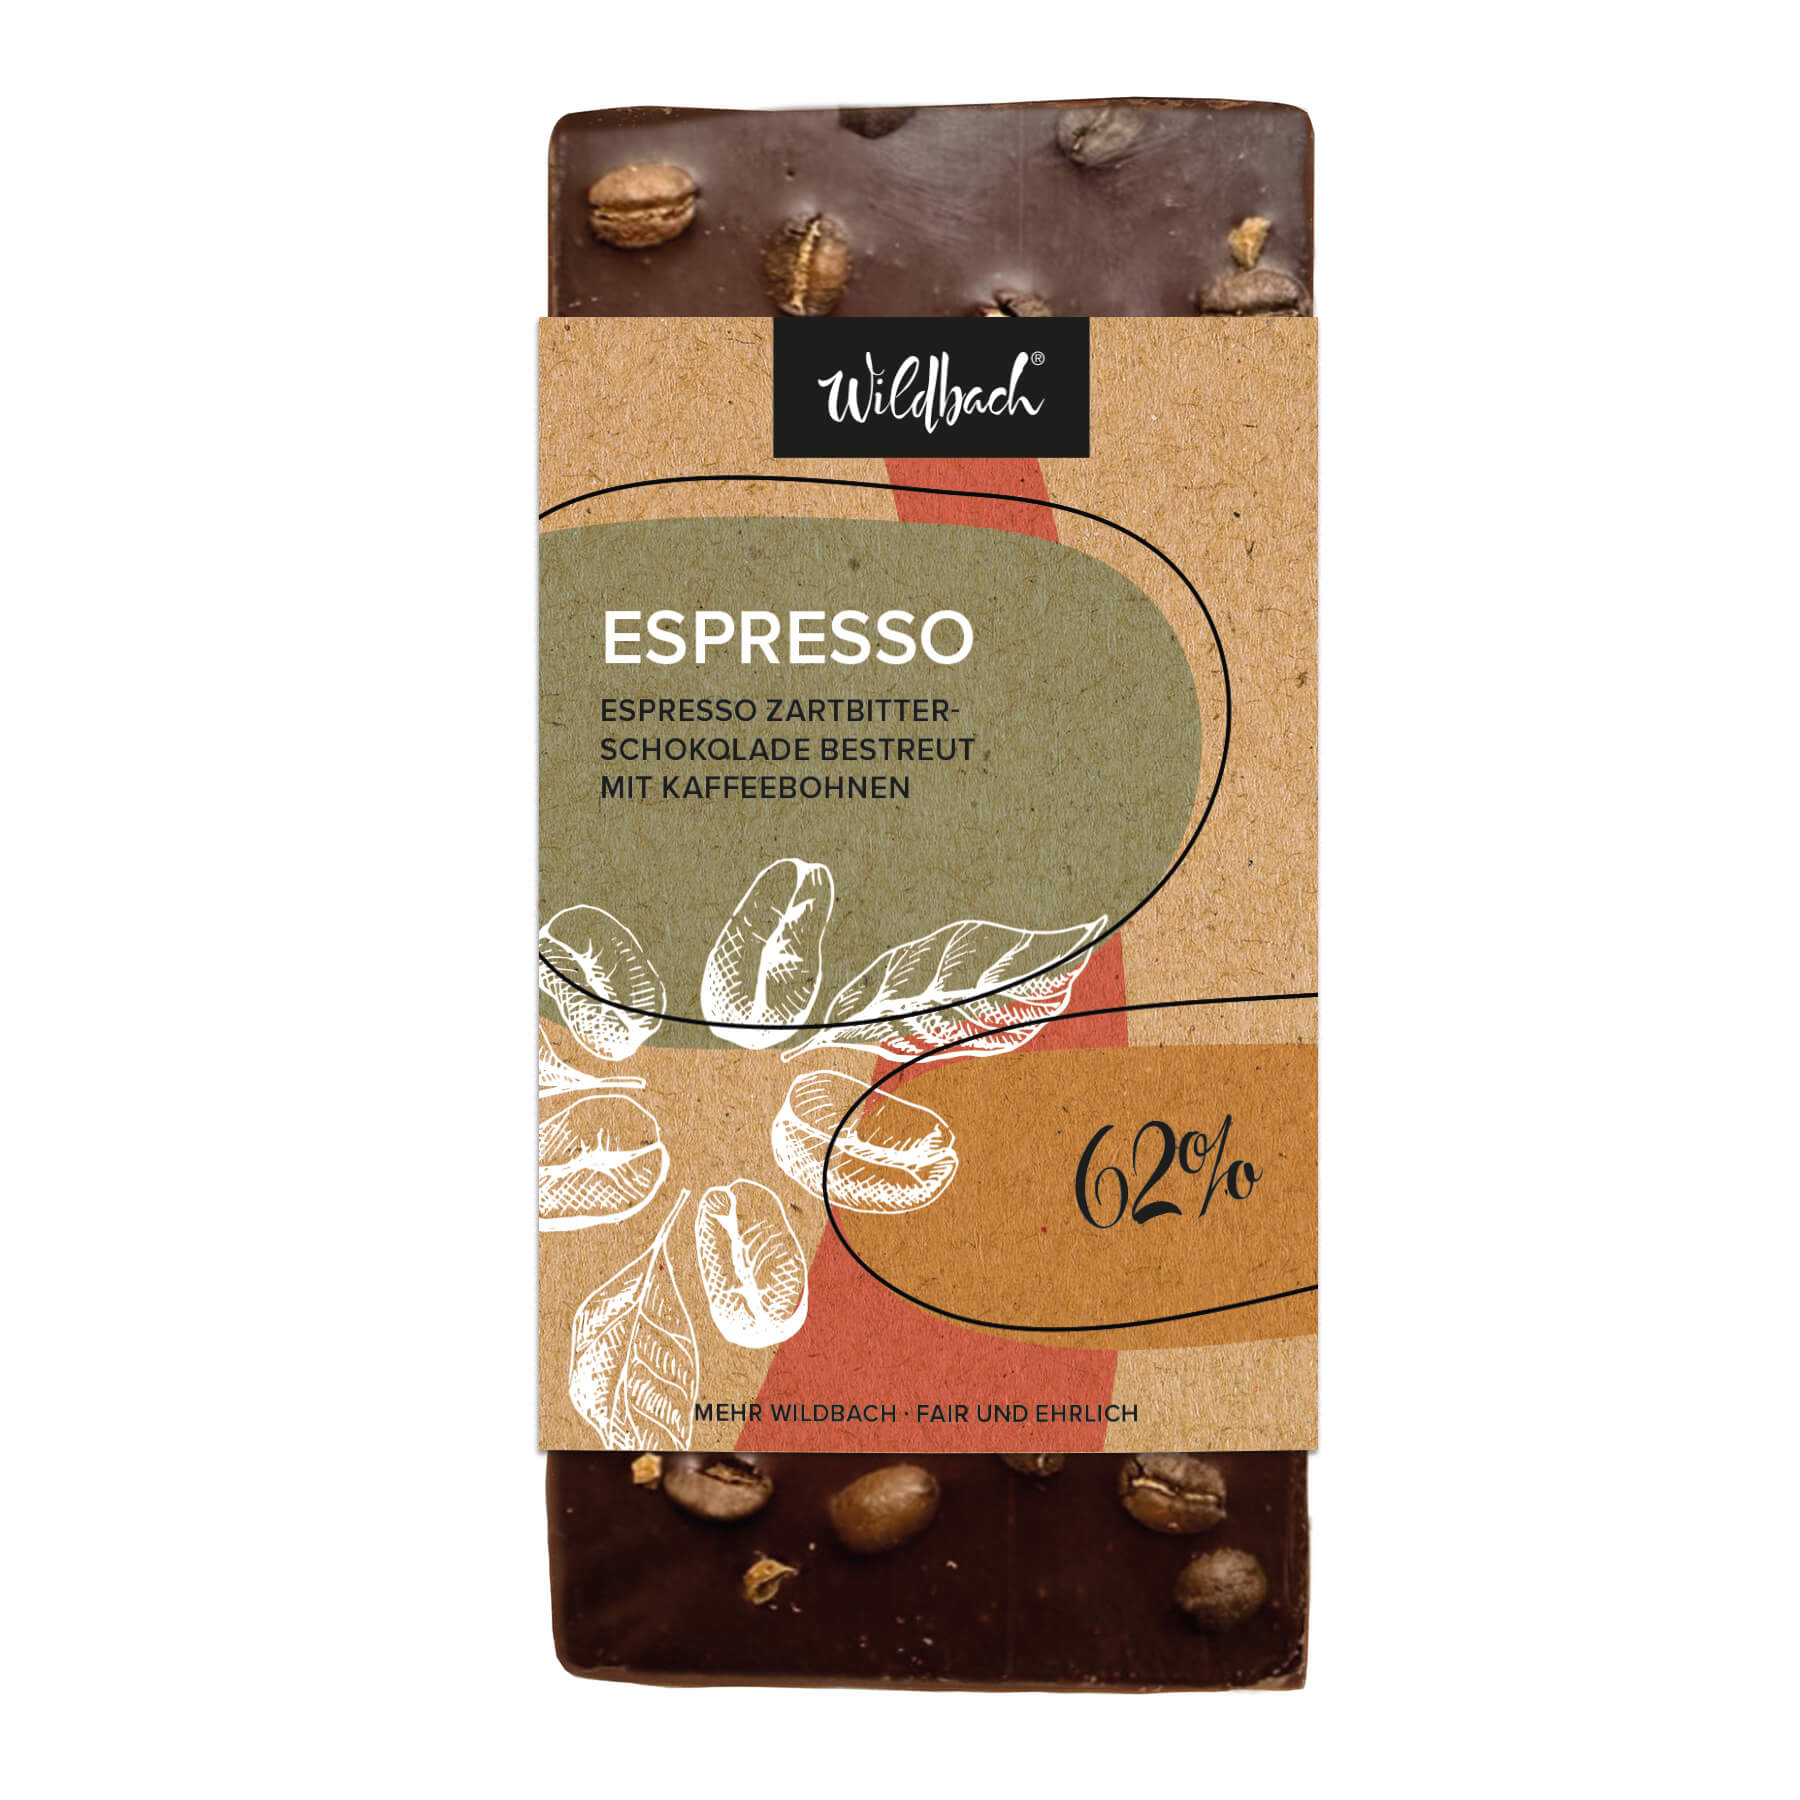 90g Tafel Extra viel Wildbach - Espresso mit Kaffeebohnen